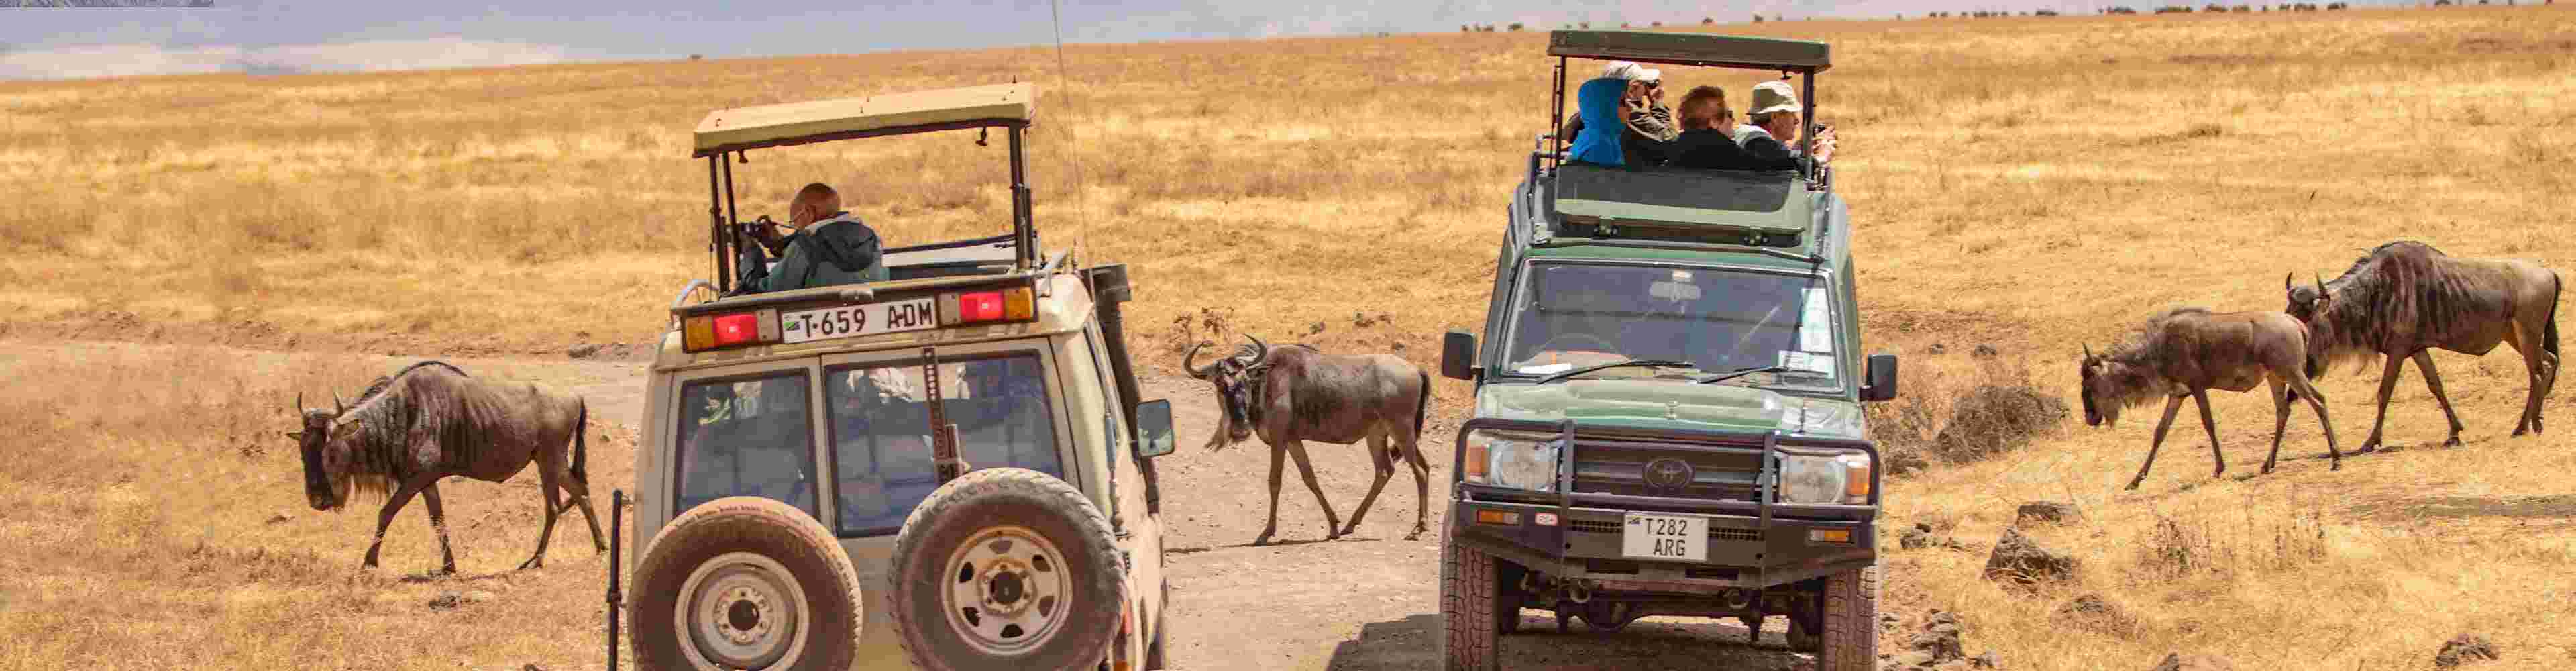 intrepid travel africa safari